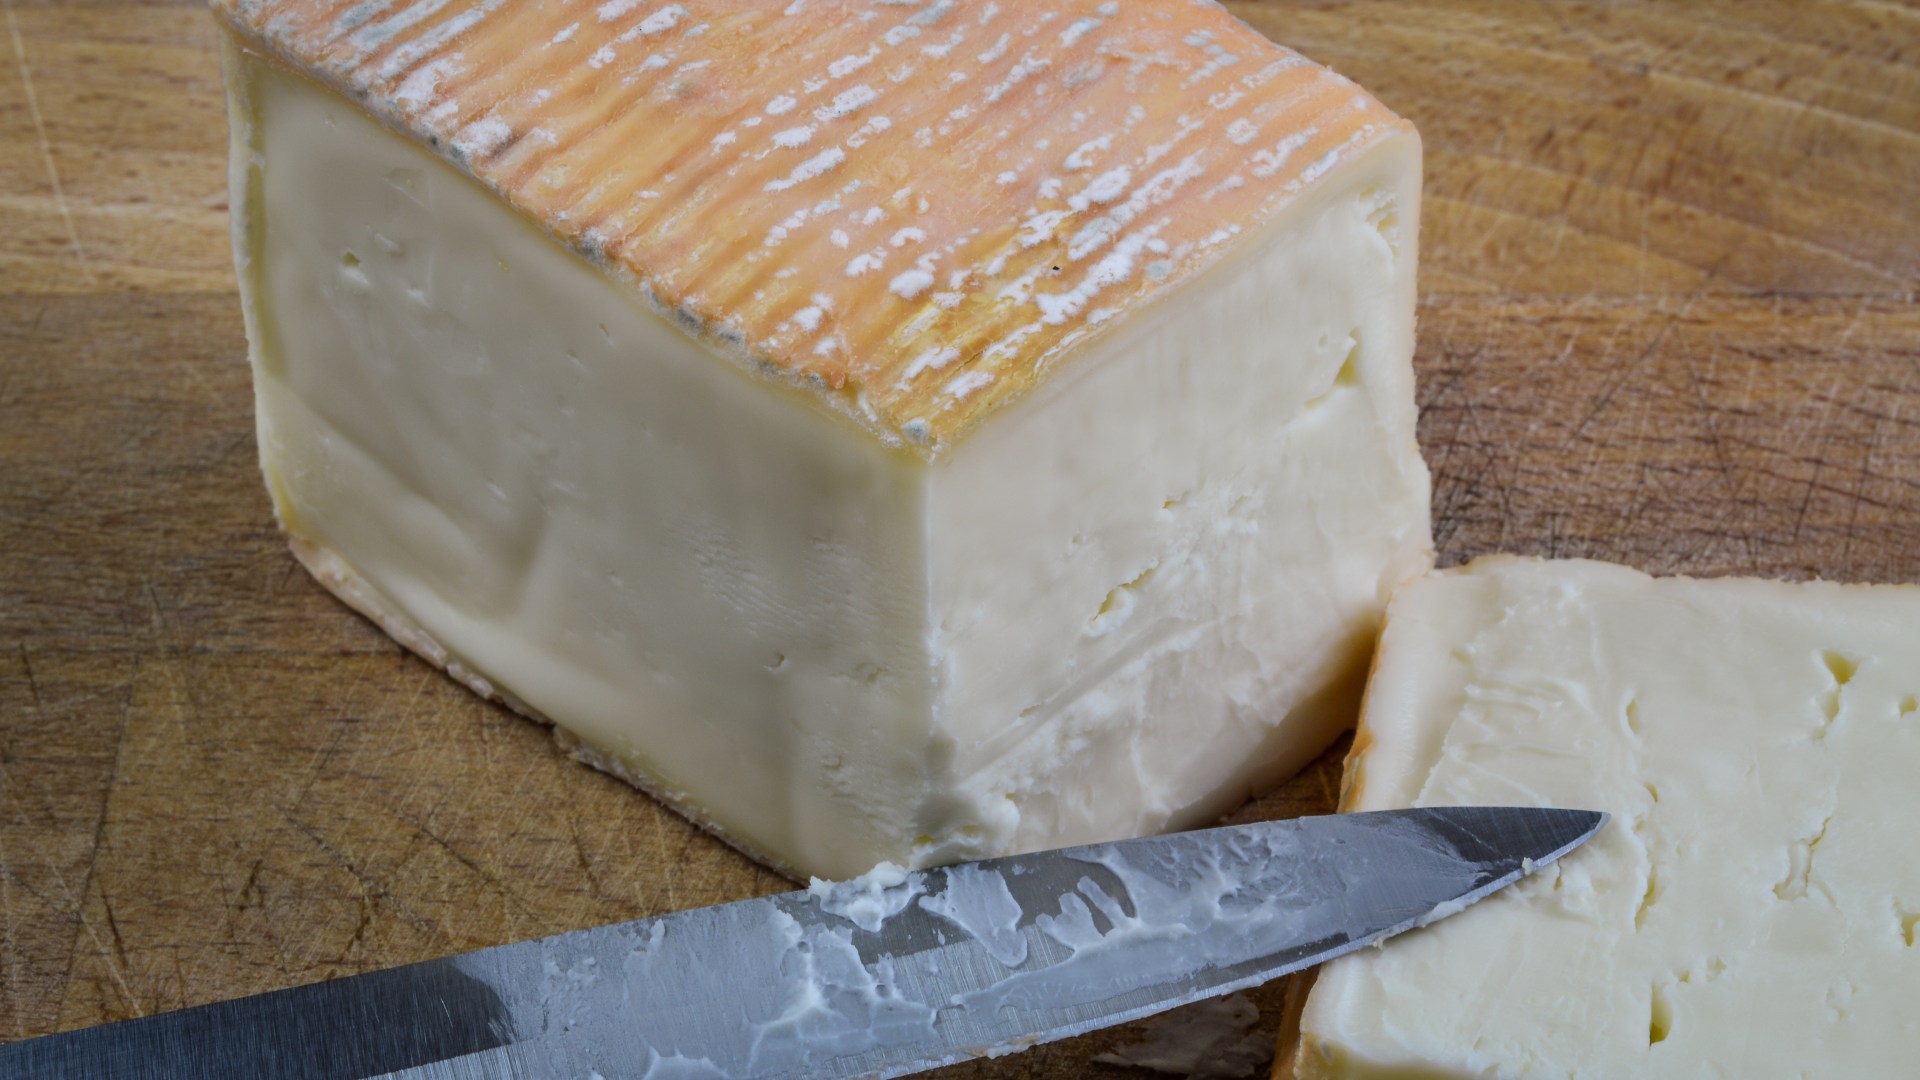 Teme que más queso esté contaminado con un insecto mortal después de que dos supermercados retiraran productos de los estantes